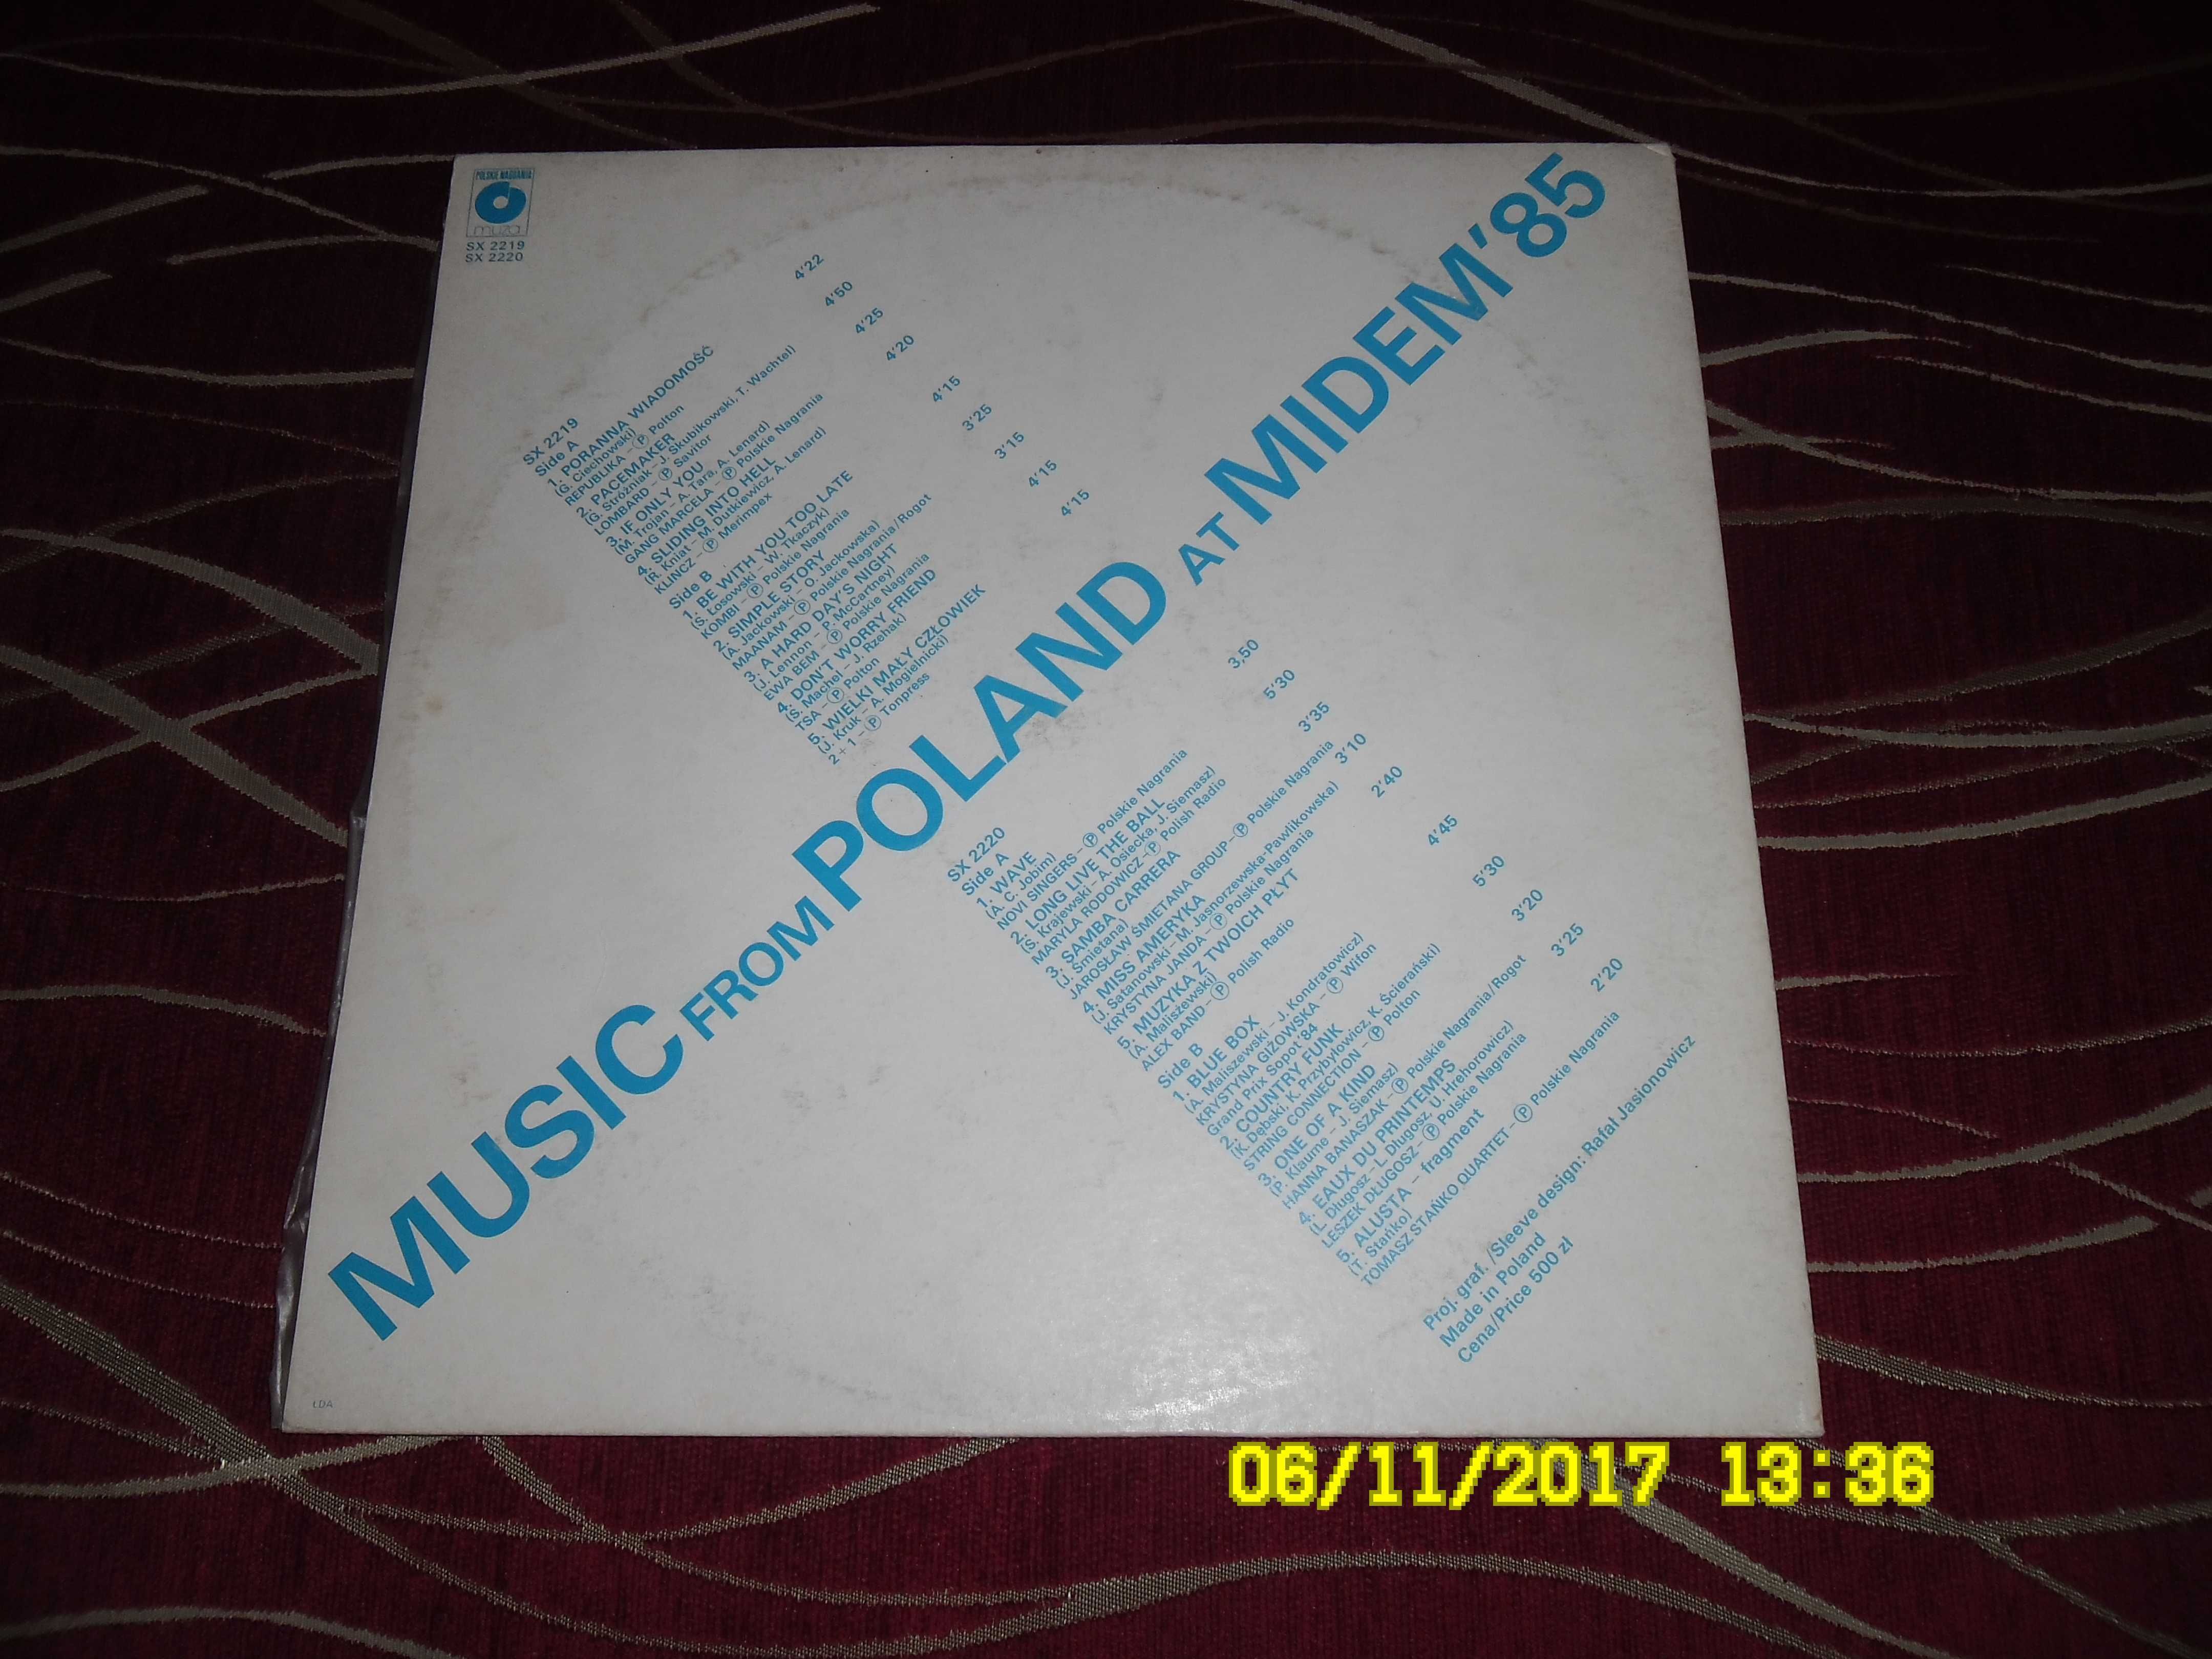 Płyta LP - Midem '85 - Tomasz Stańko Quartet, TSA (2LP).M1